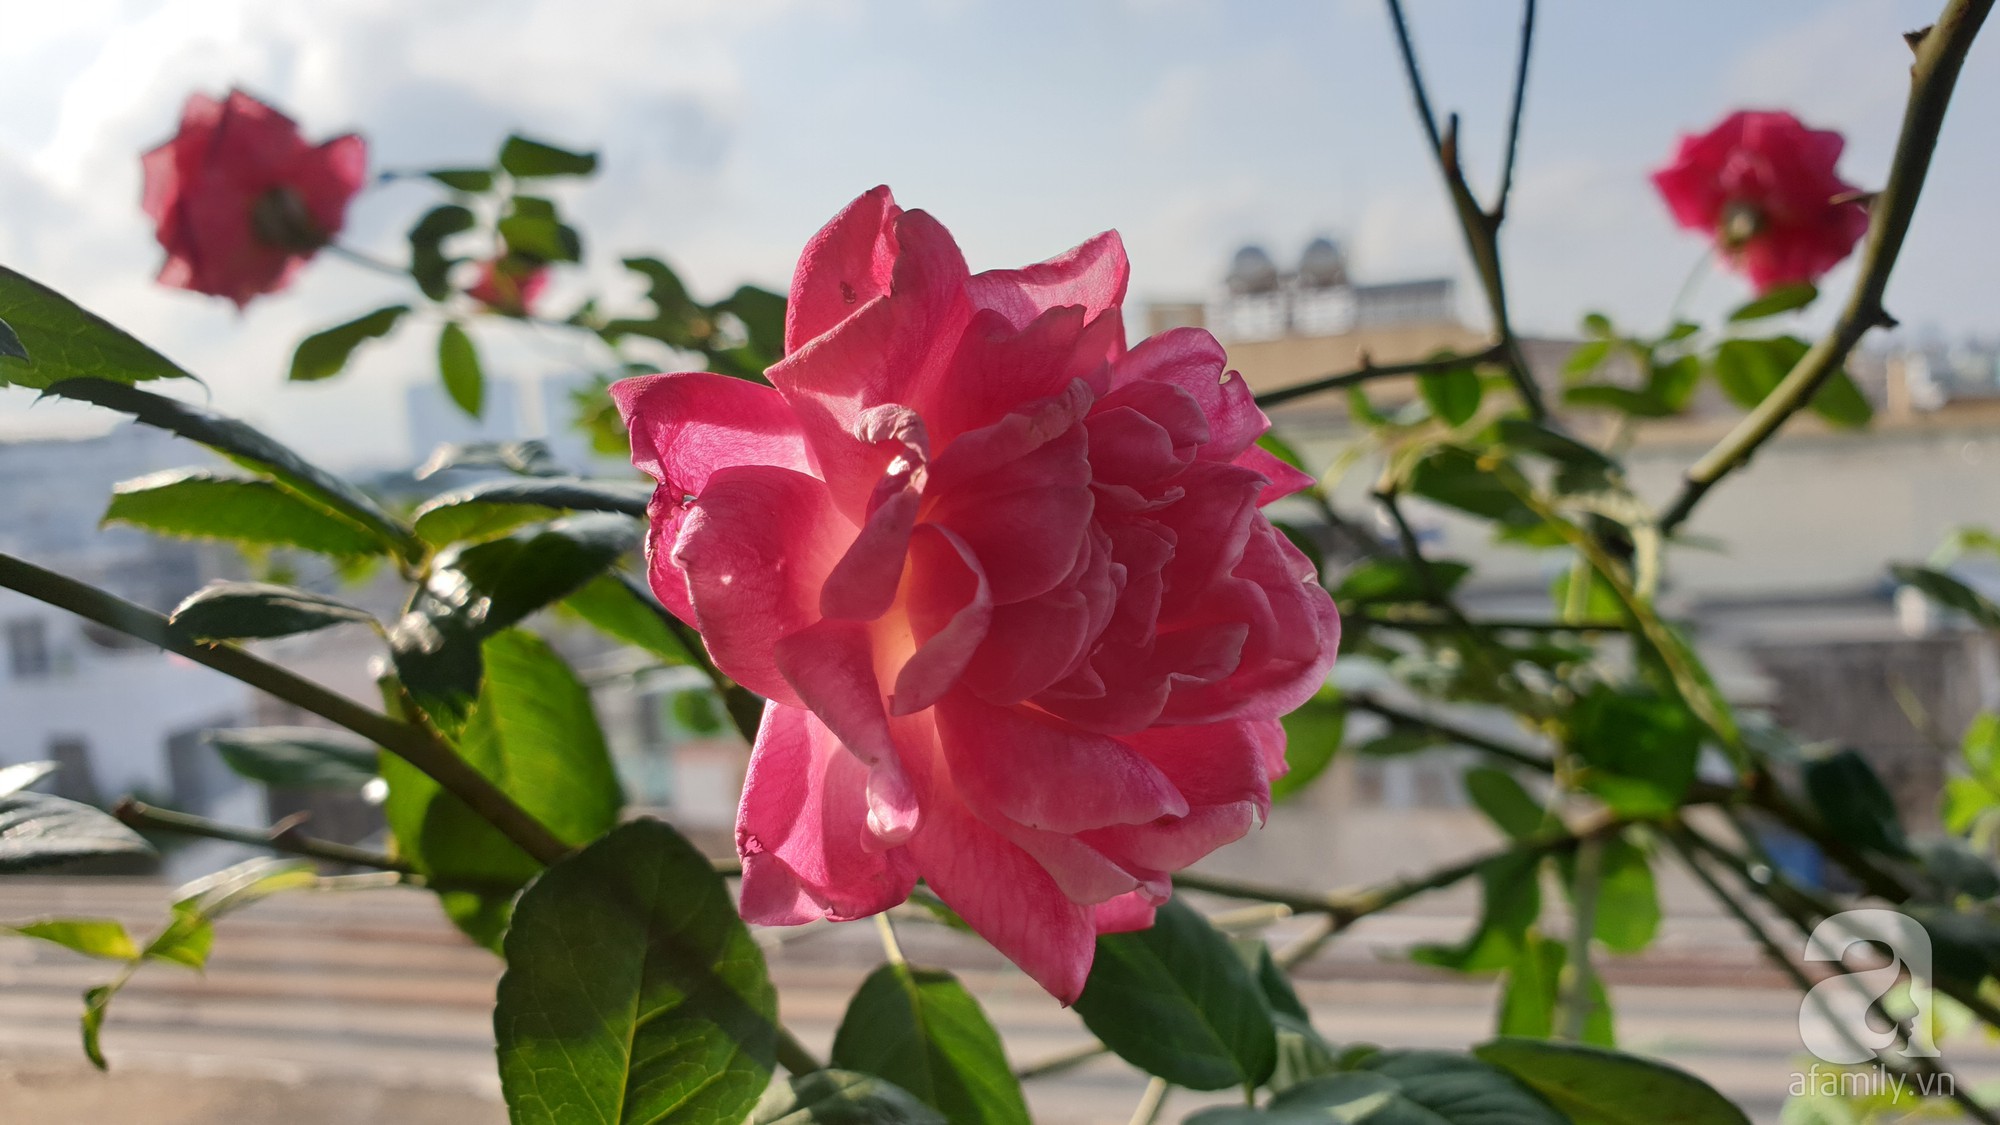 Vườn hồng trên sân thượng rực rỡ sắc màu của chàng trai 8x siêu đảm ở Sài Gòn - Ảnh 15.